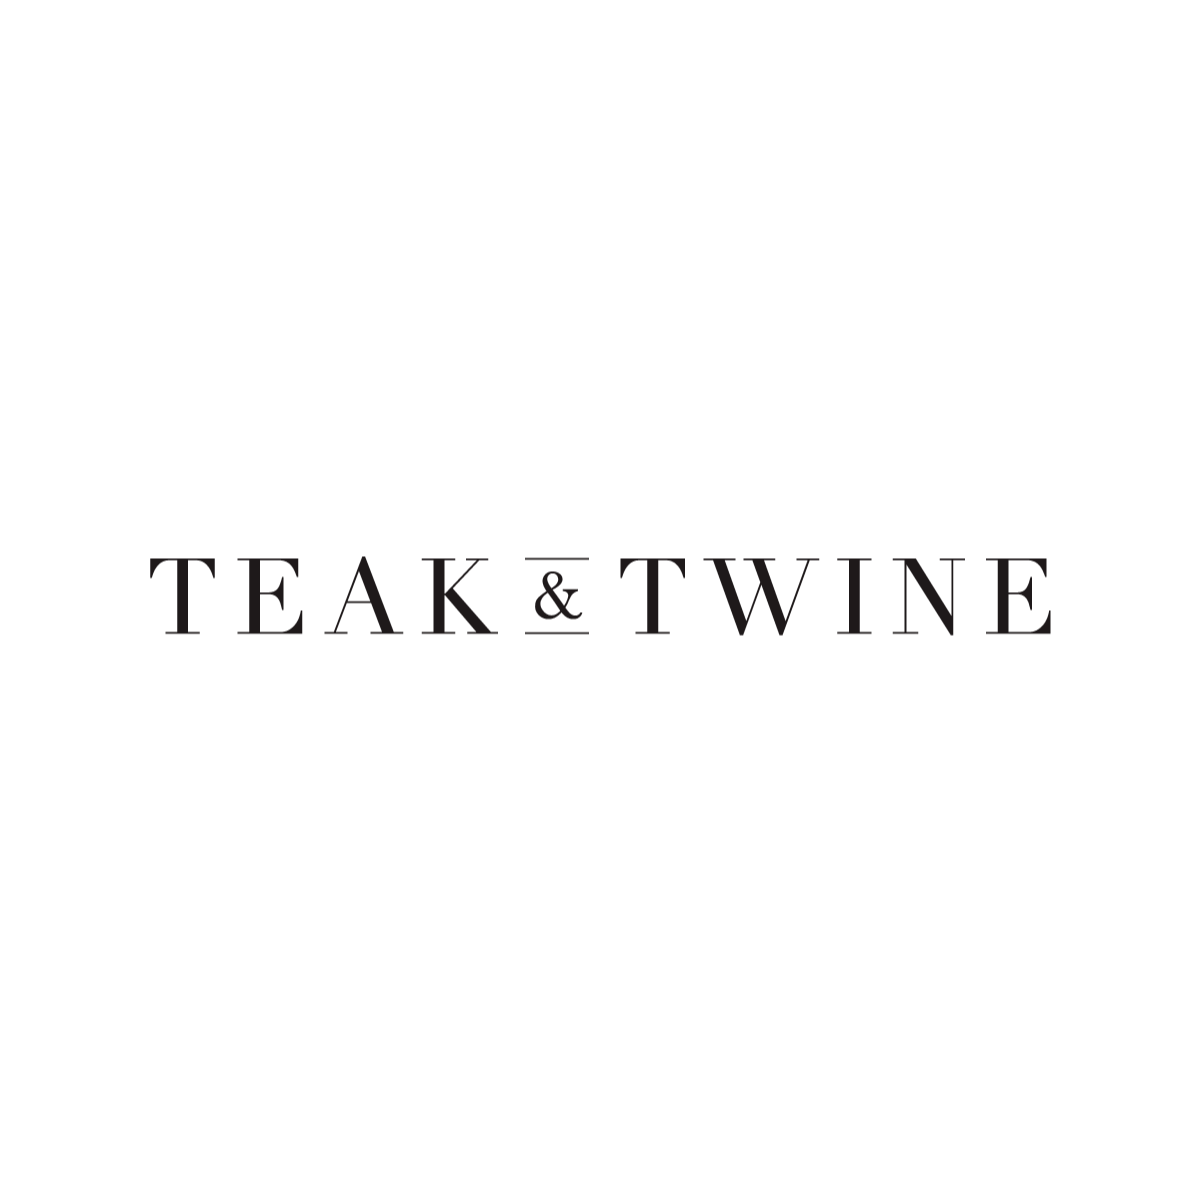 Teak & Twine